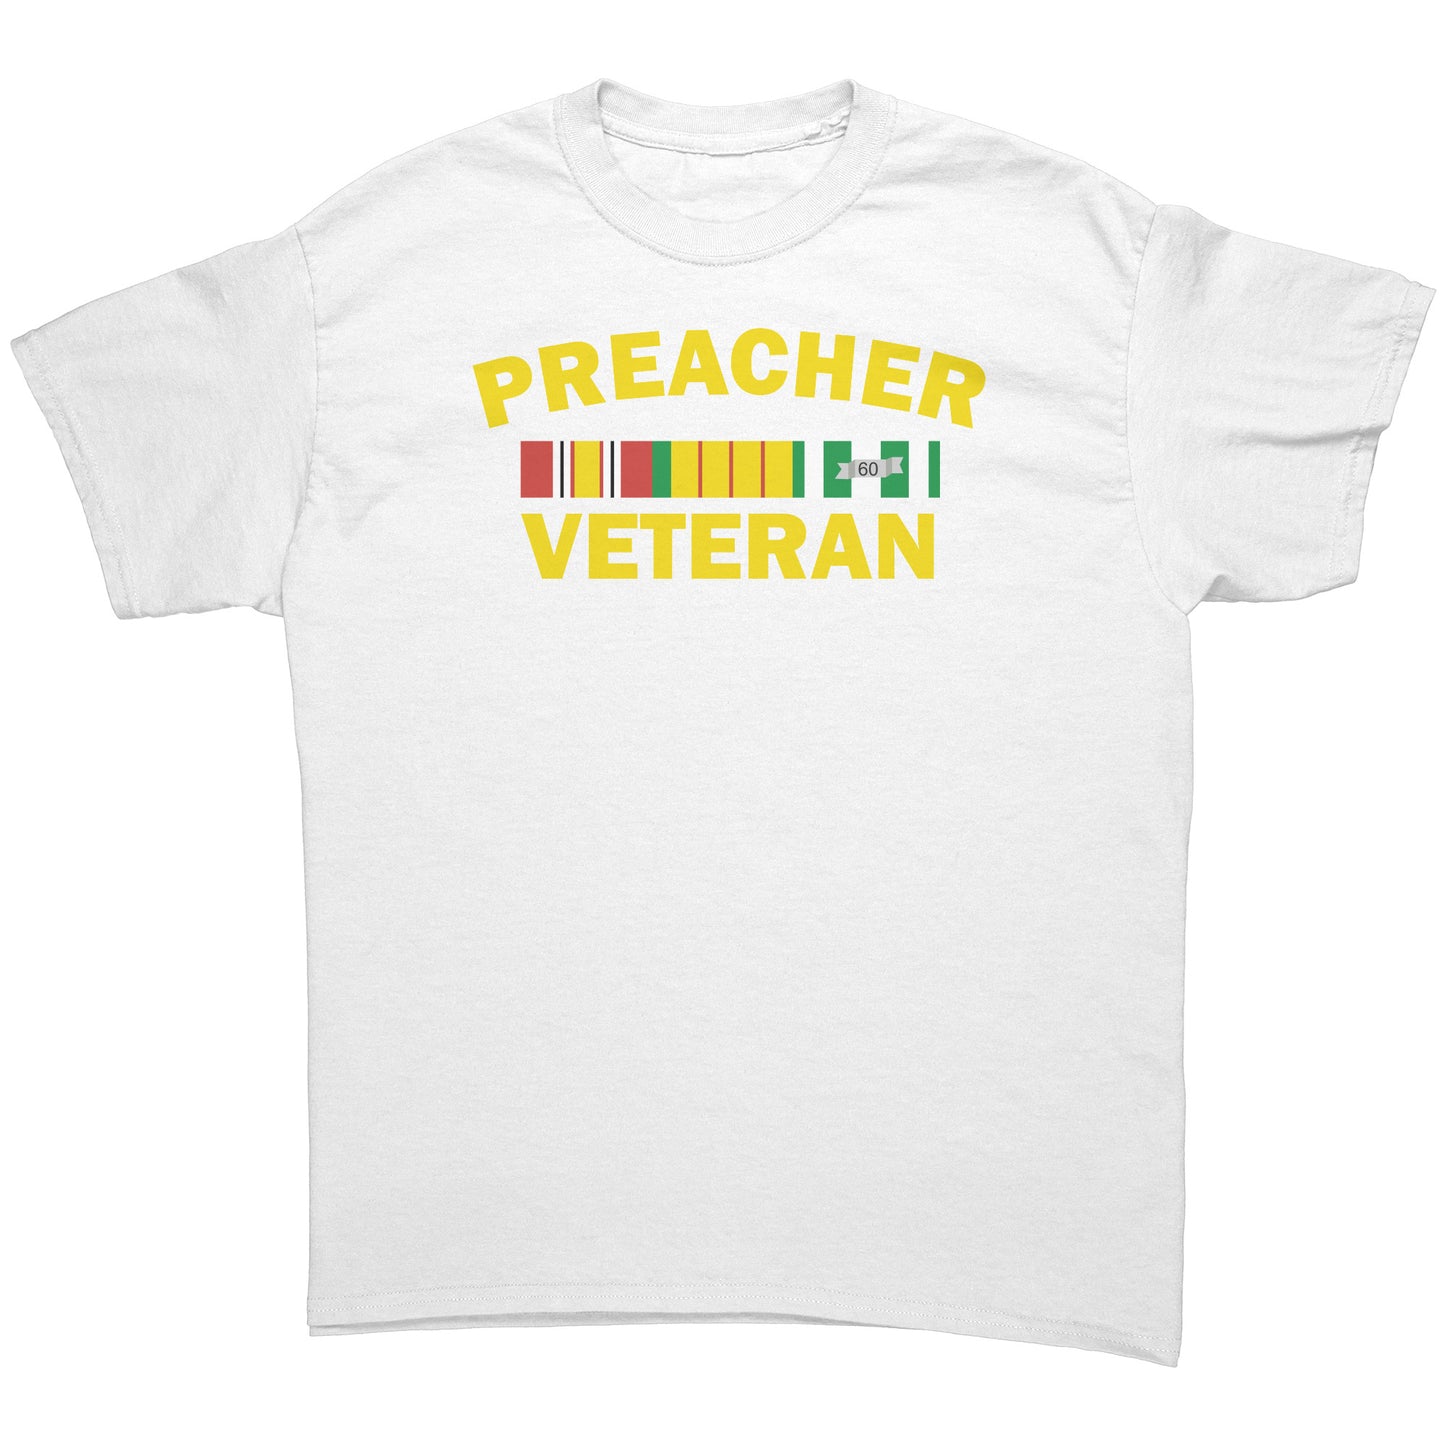 Preacher Veteran Men's T-Shirt